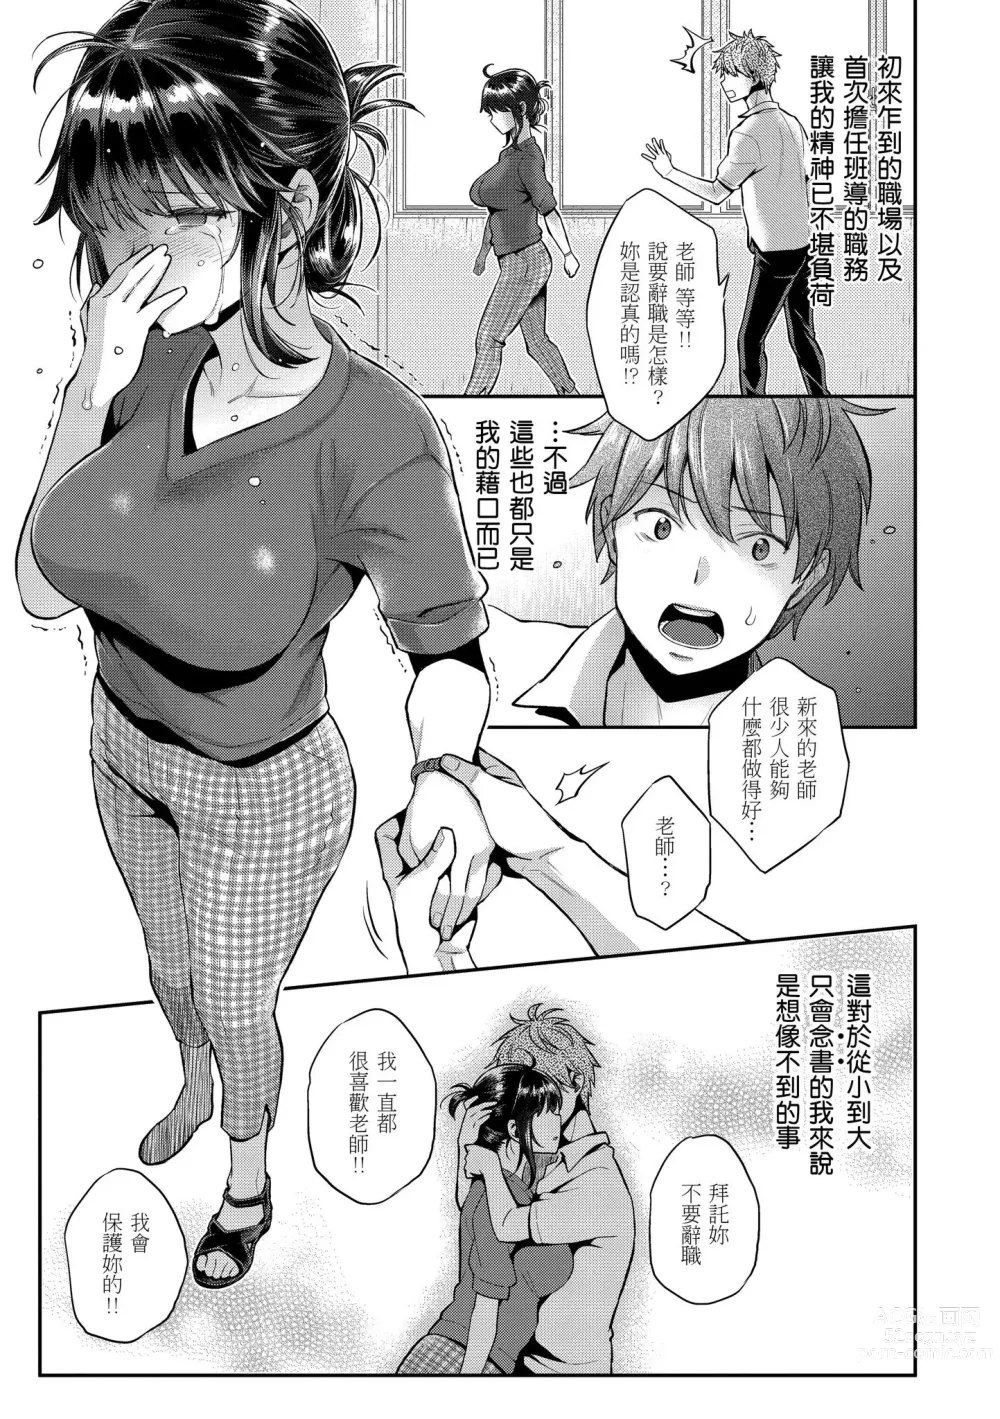 Page 9 of manga 我現在...就想做。